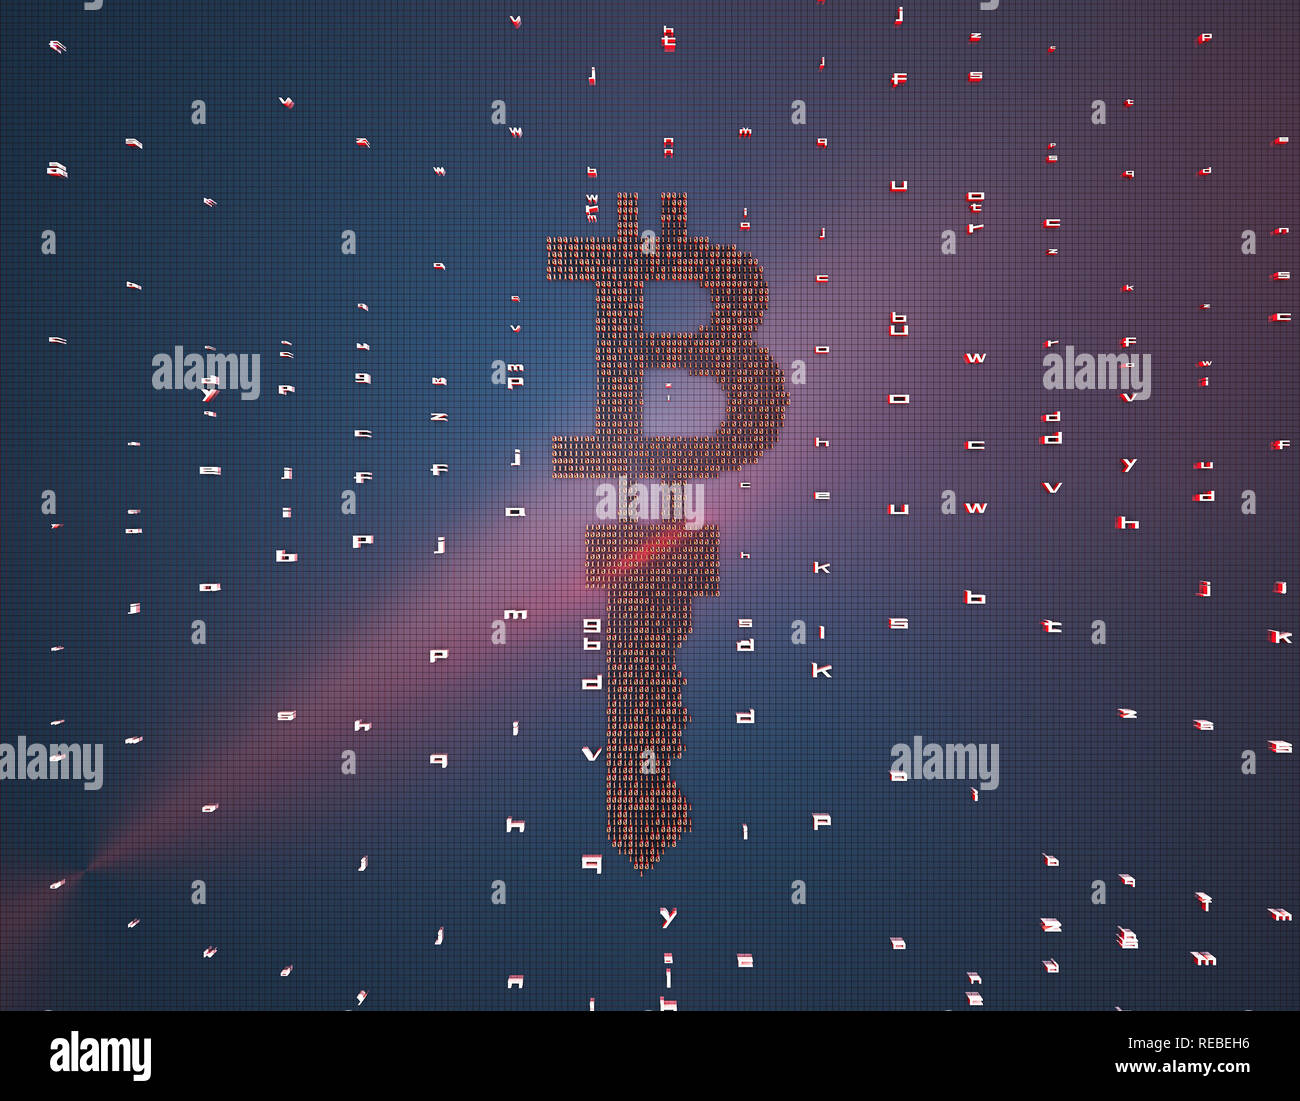 La technologie réseau finances, le symbole de devise et les principaux composés de symboles binaires, représentant de la technologie financière et key,bitcoin Banque D'Images